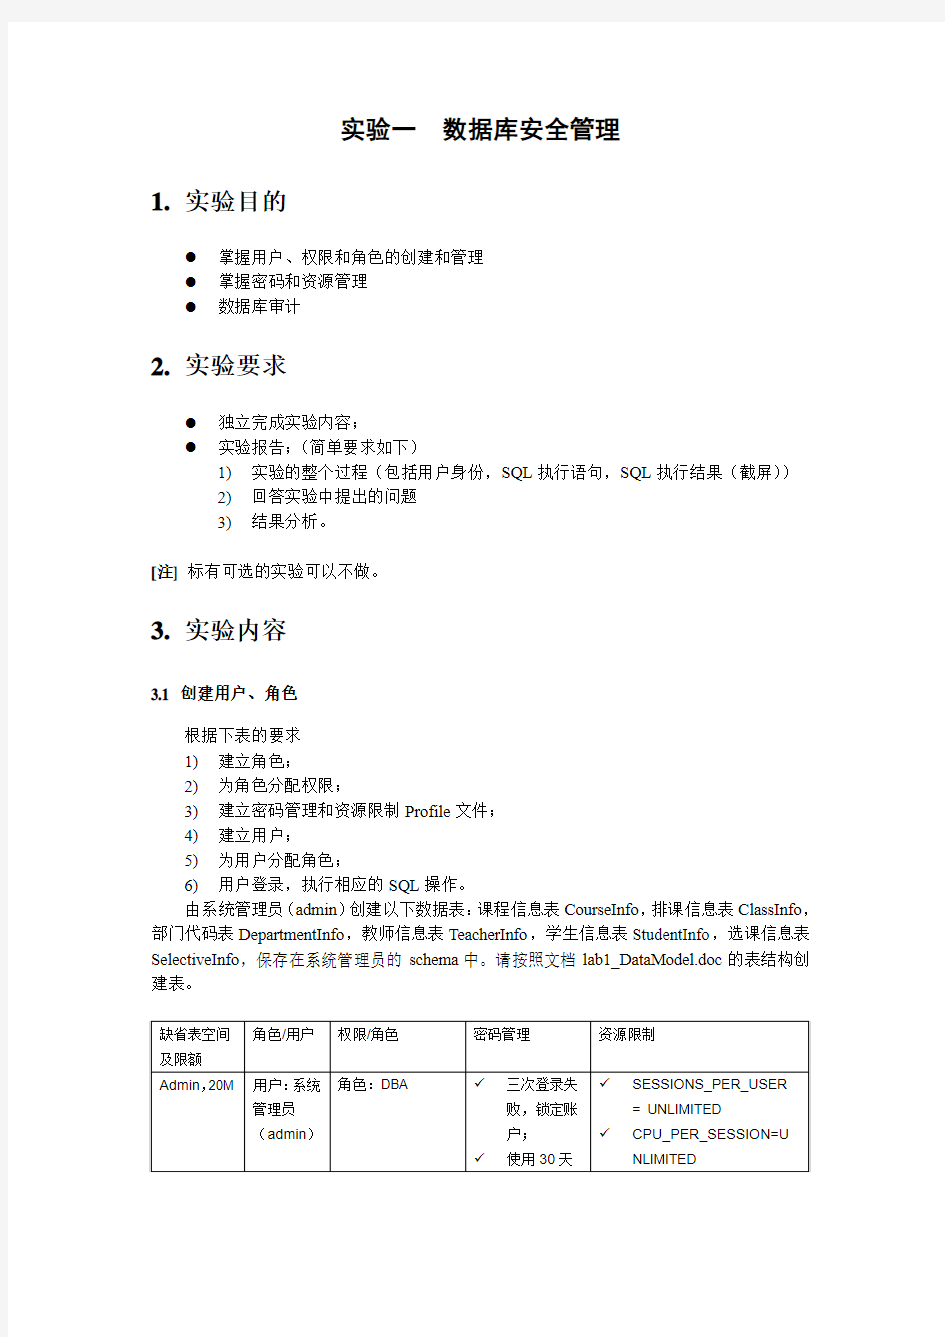 华南理工大学计算机科学与工程学院研究生课程(数据库管理及应用)lab1